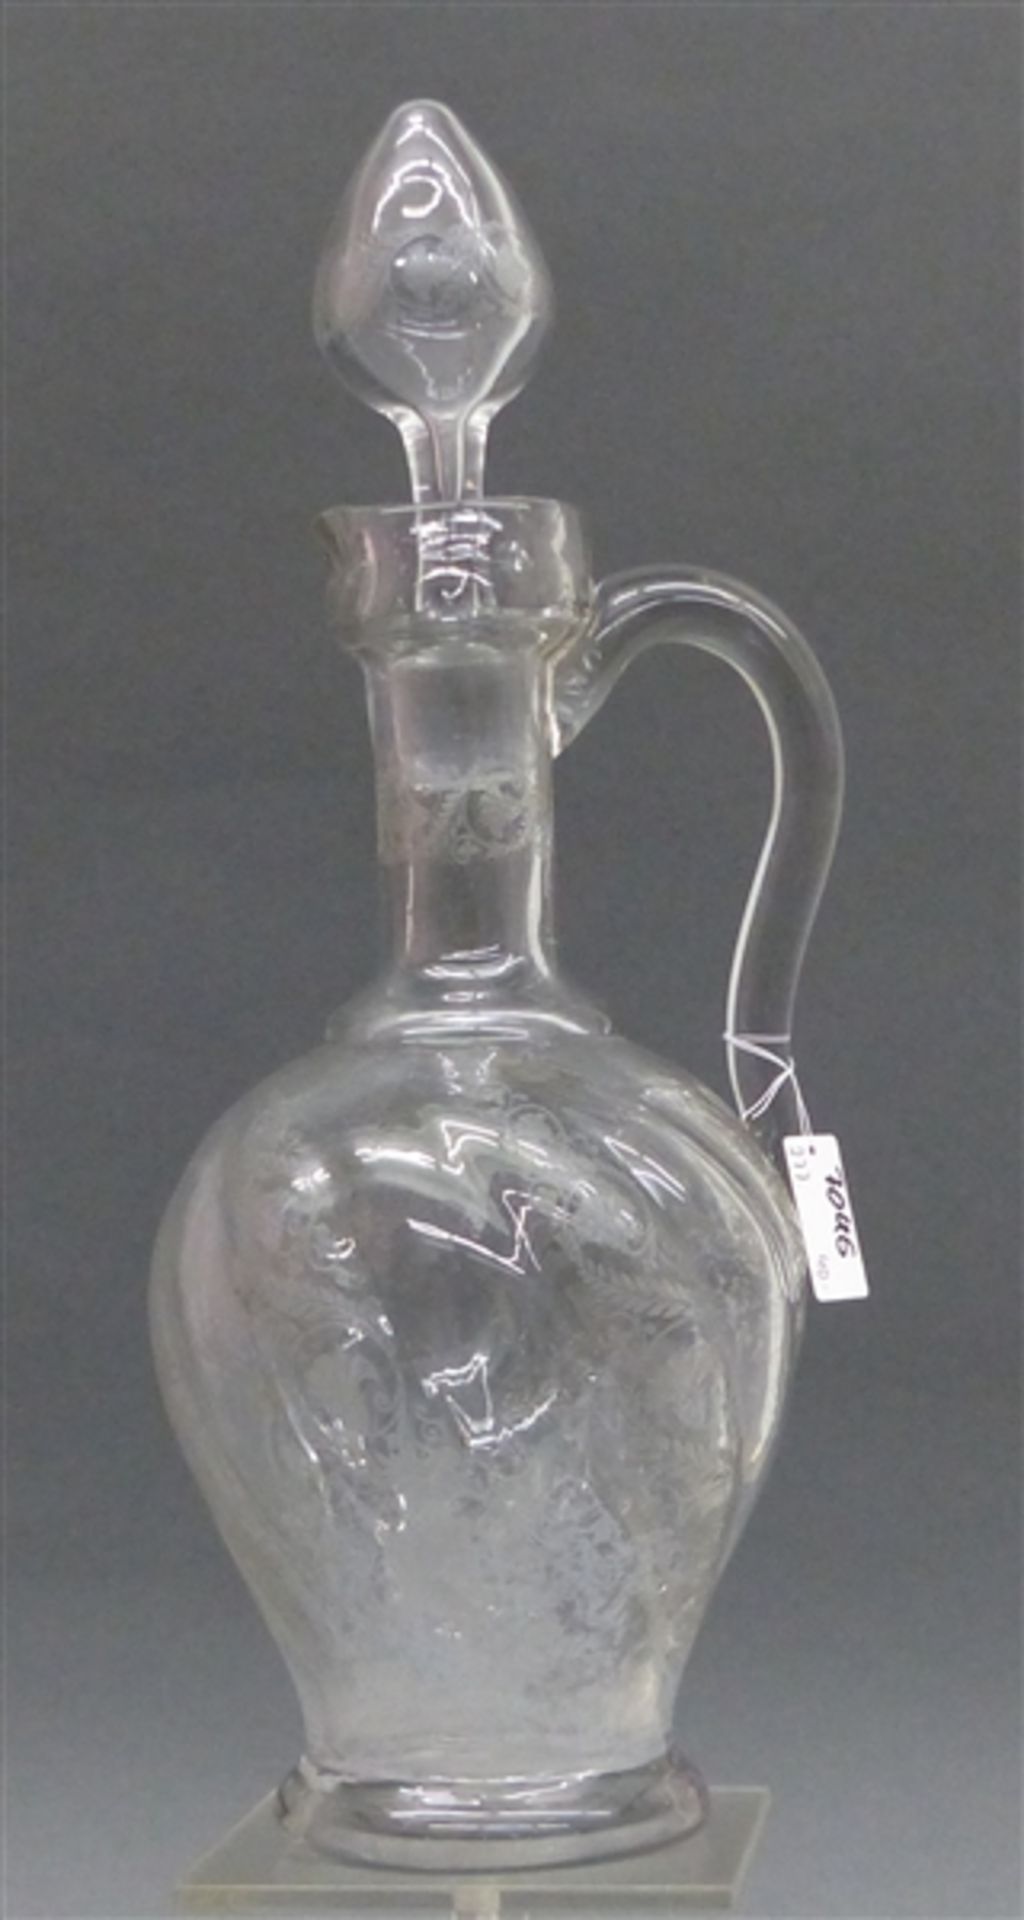 Karaffe mit Stöpsel, 19. Jh. farbloses Glas, Ätzdekor, gedrehte Form, mit Henkel, h 32 cm,